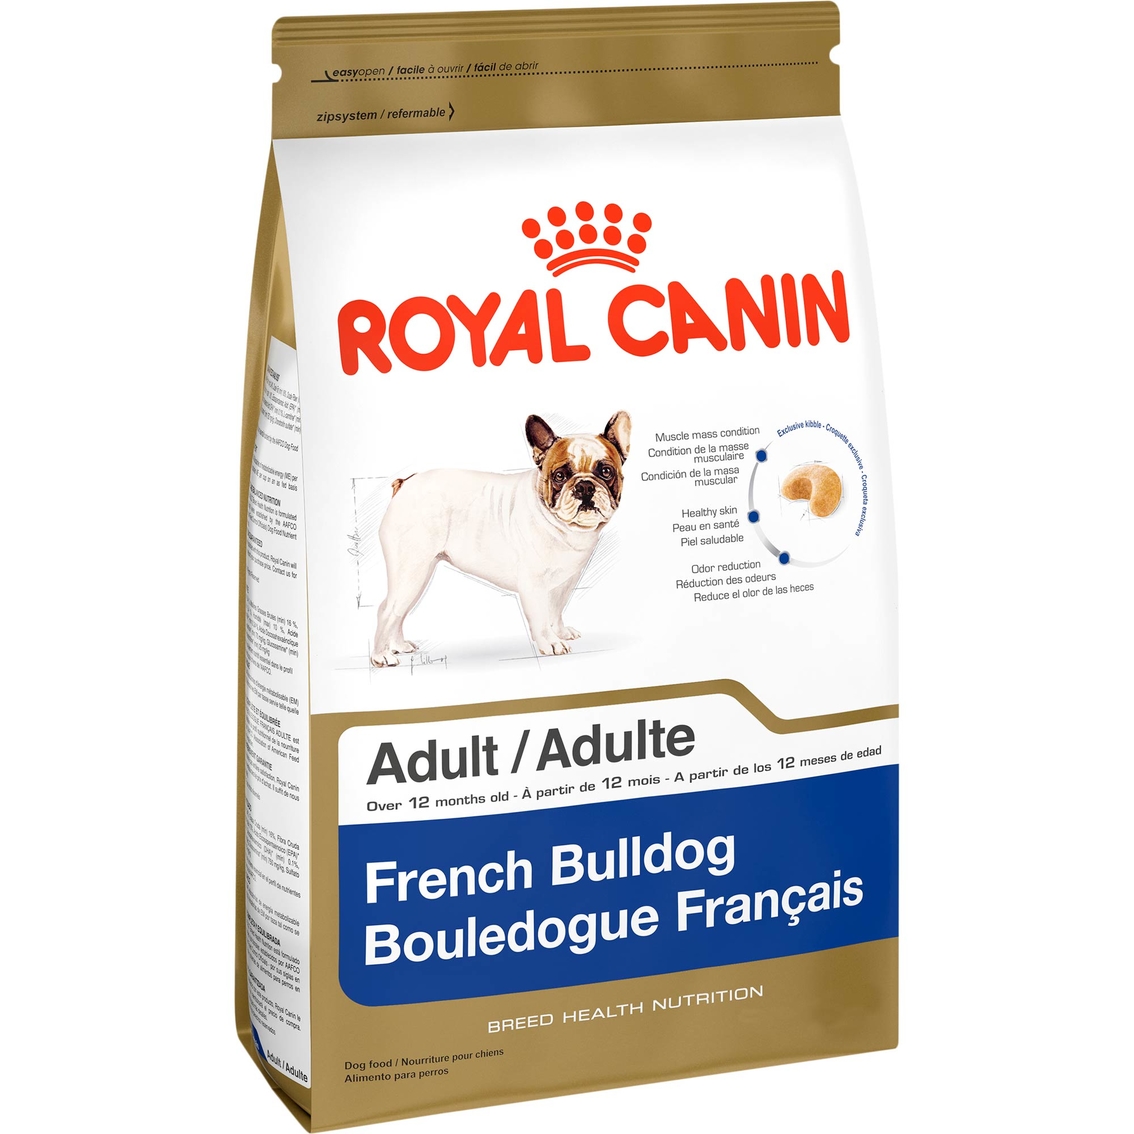 Royal Canin Breed Health Nutrition French Bulldog Dog Food